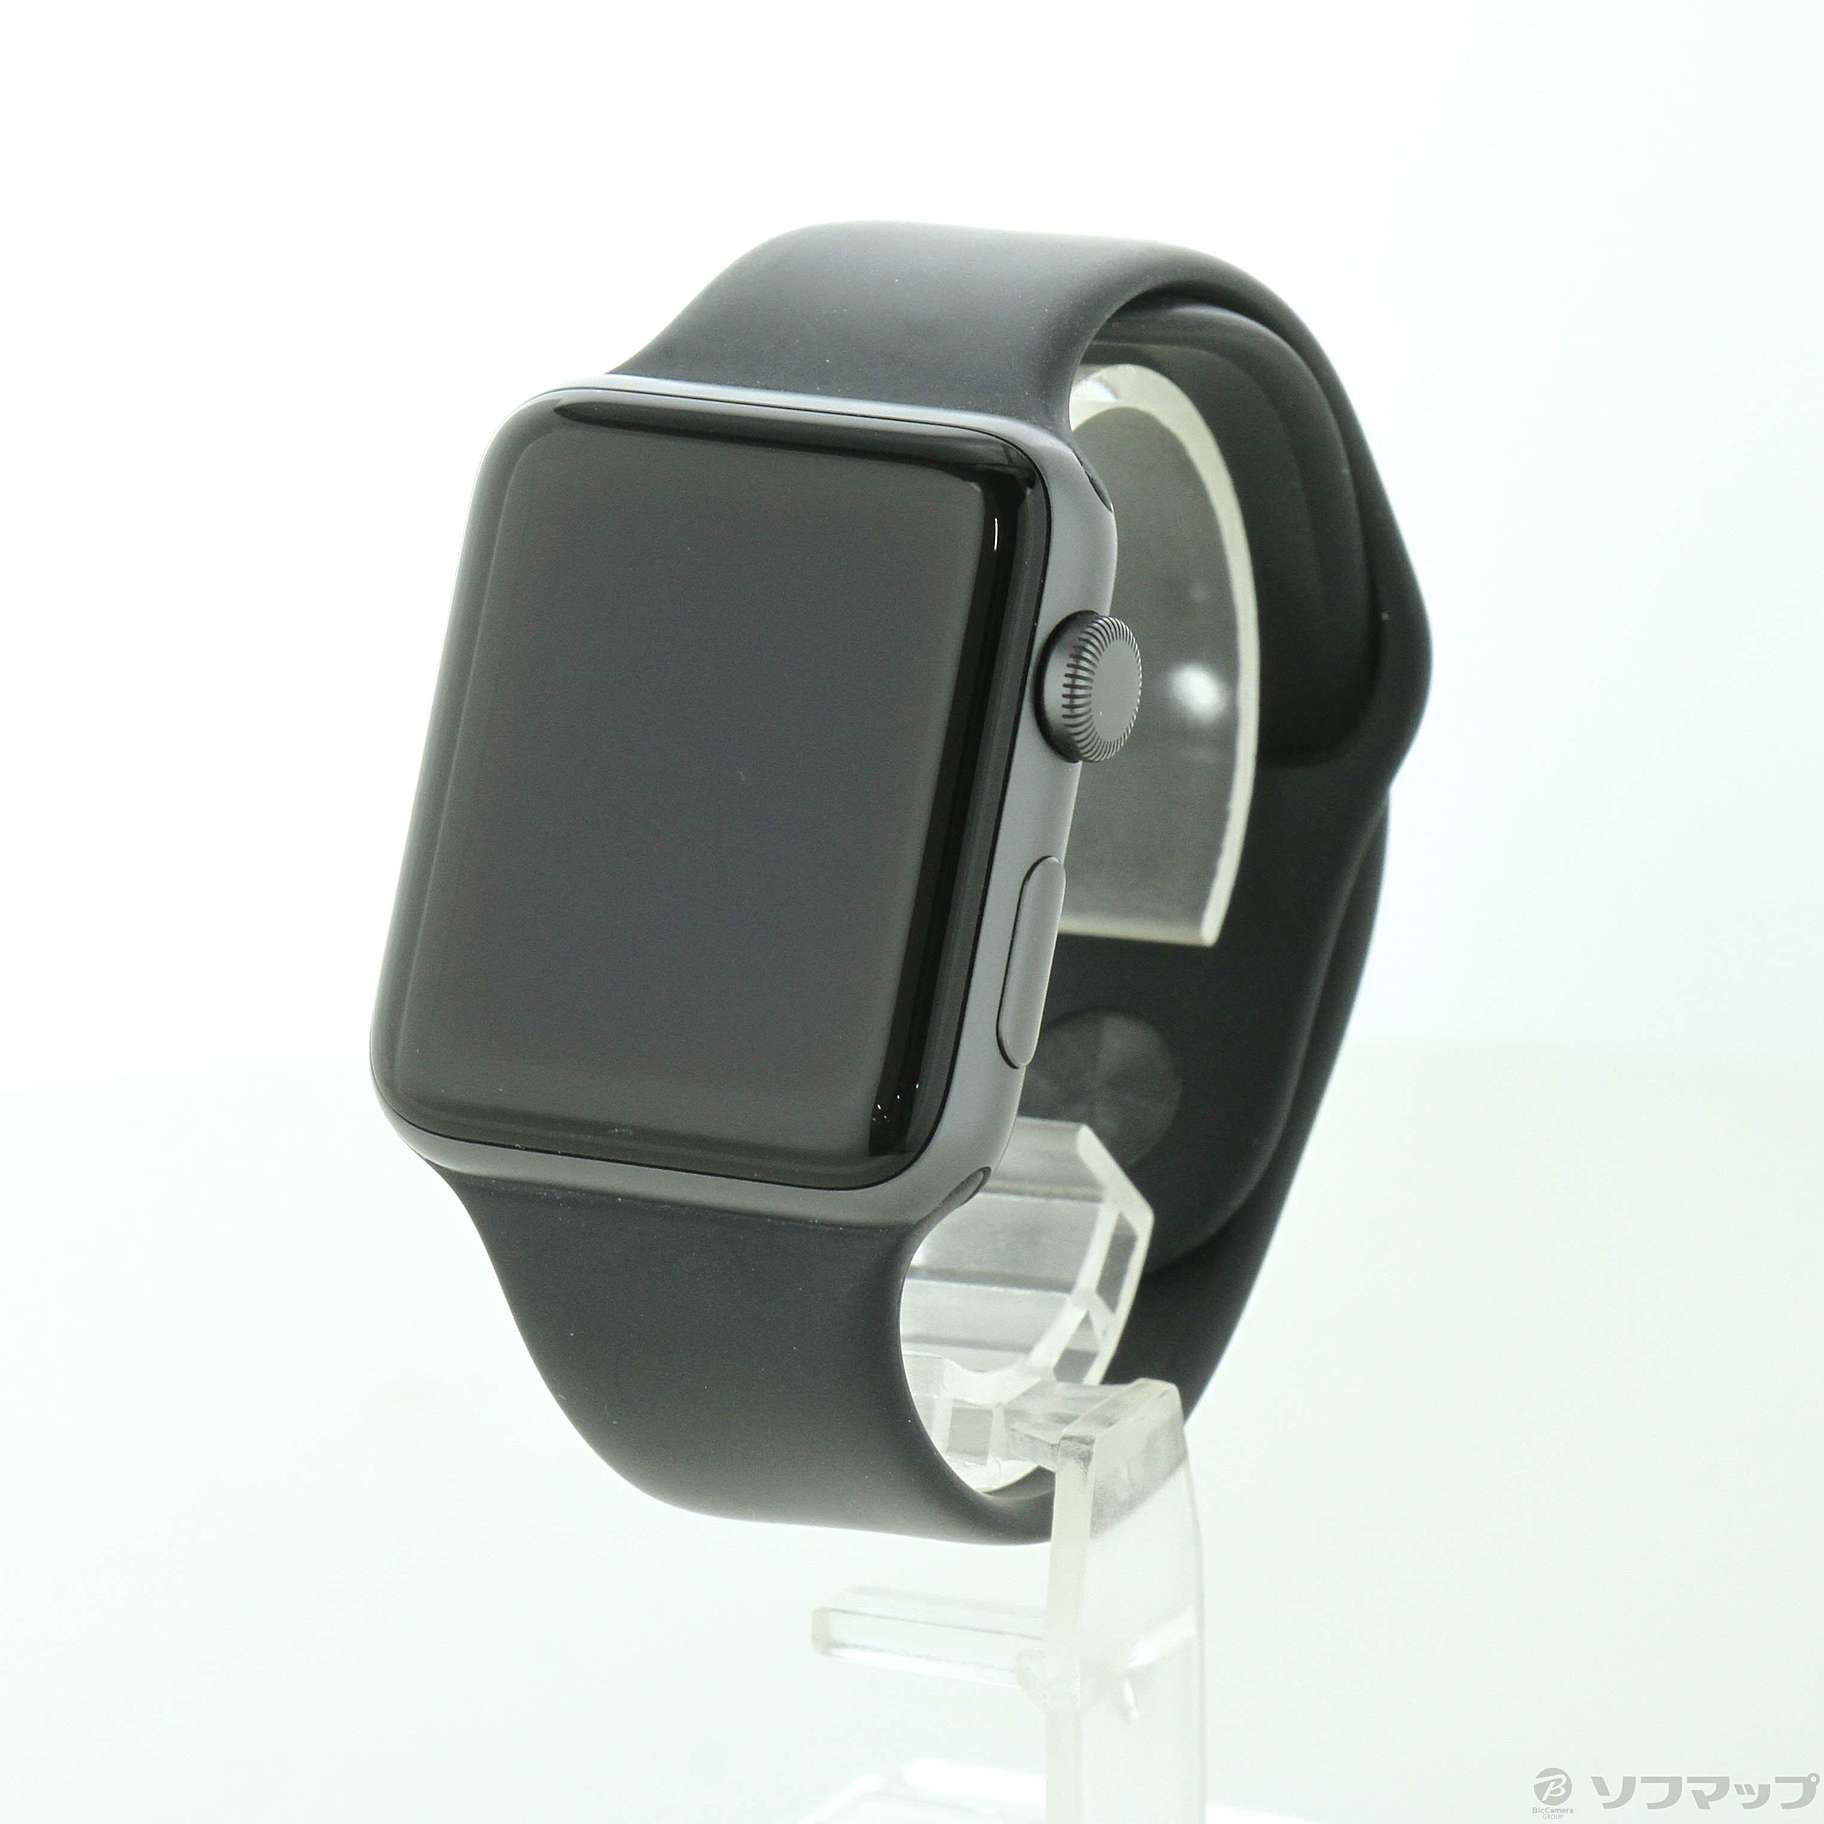 中古品〕 Apple Watch Series 3 GPS 42mm スペースグレイアルミニウム